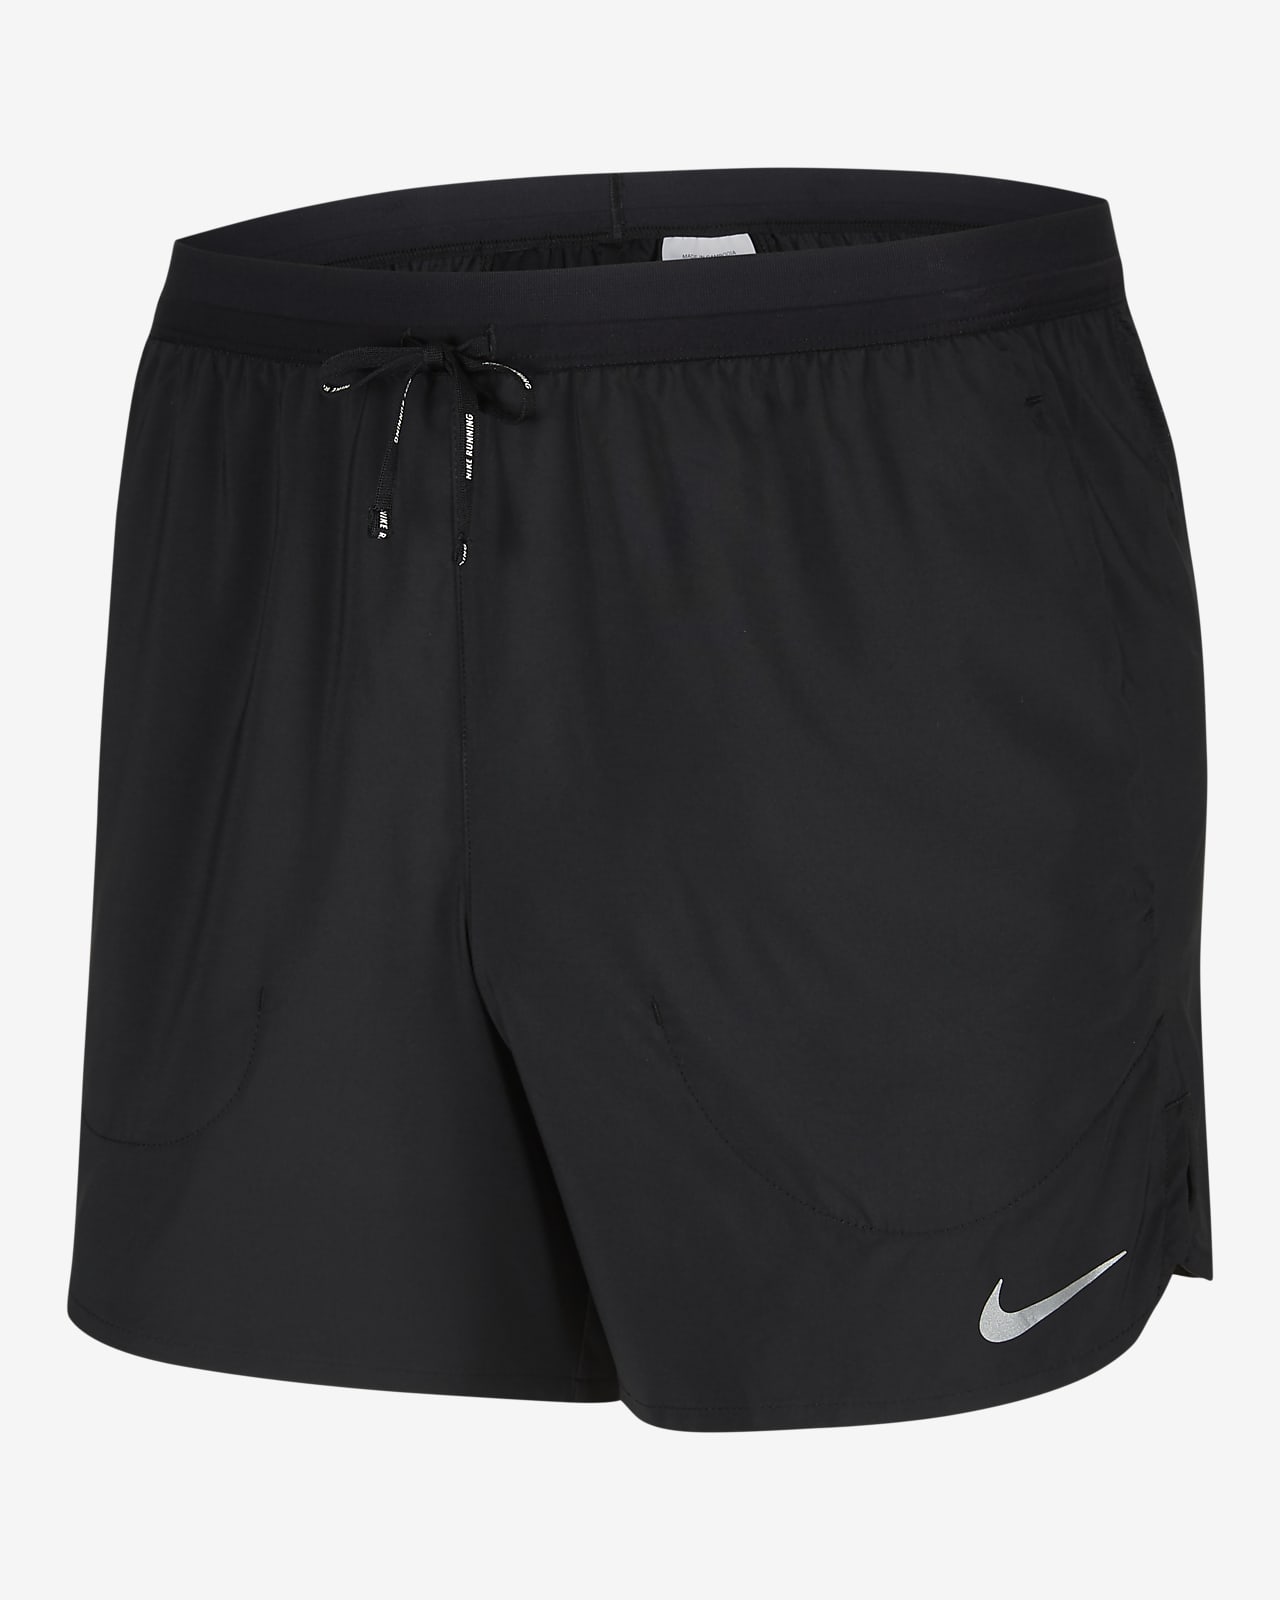 Nike Flex Stride Men's Unlined Running Shorts